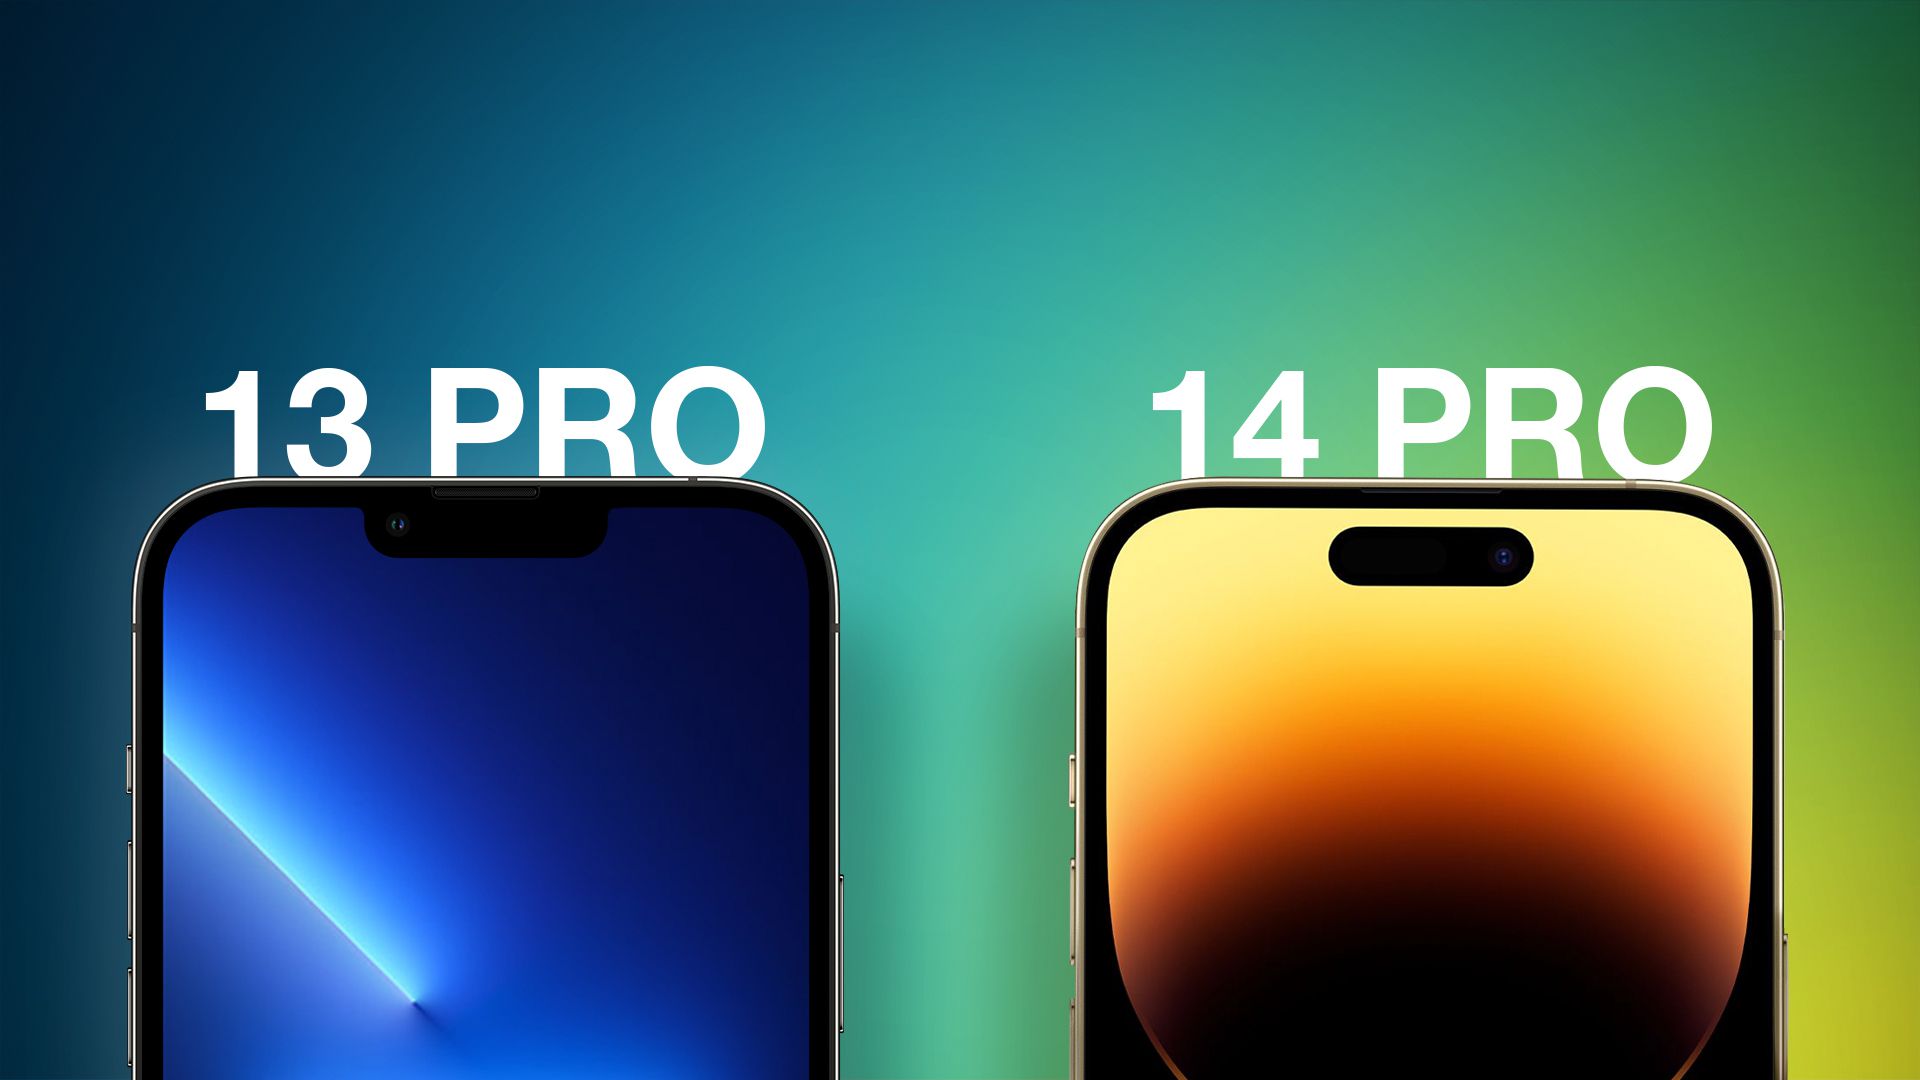 Айфон 13 про сравнить 14 про. Айфон 14 Pro. Айфон 13. Iphone 13 Pro и iphone 14 Pro. Айфон 13 vs 14.